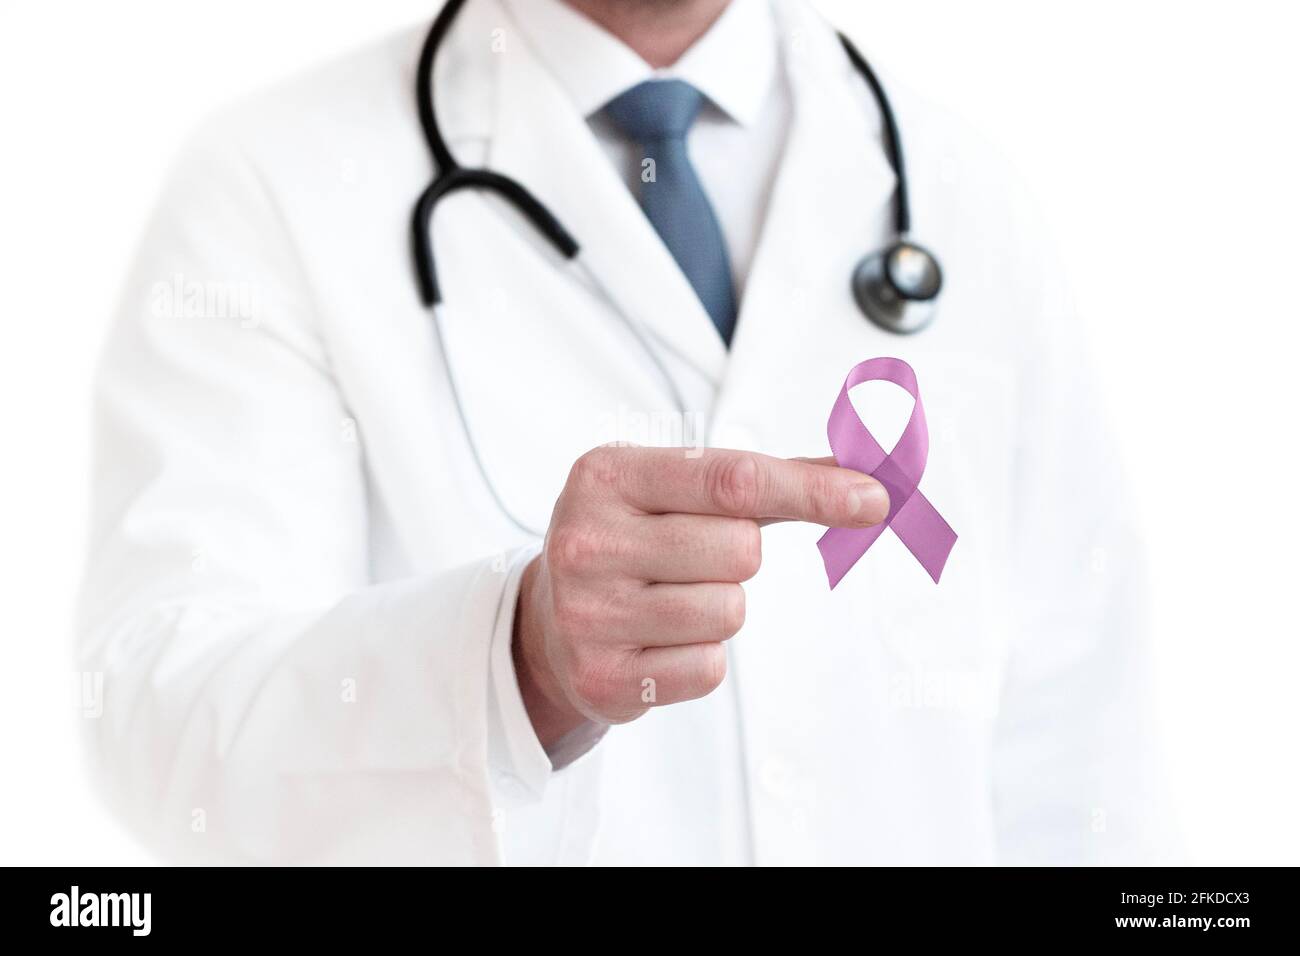 Pancreatic cancer awareness Stock Photo